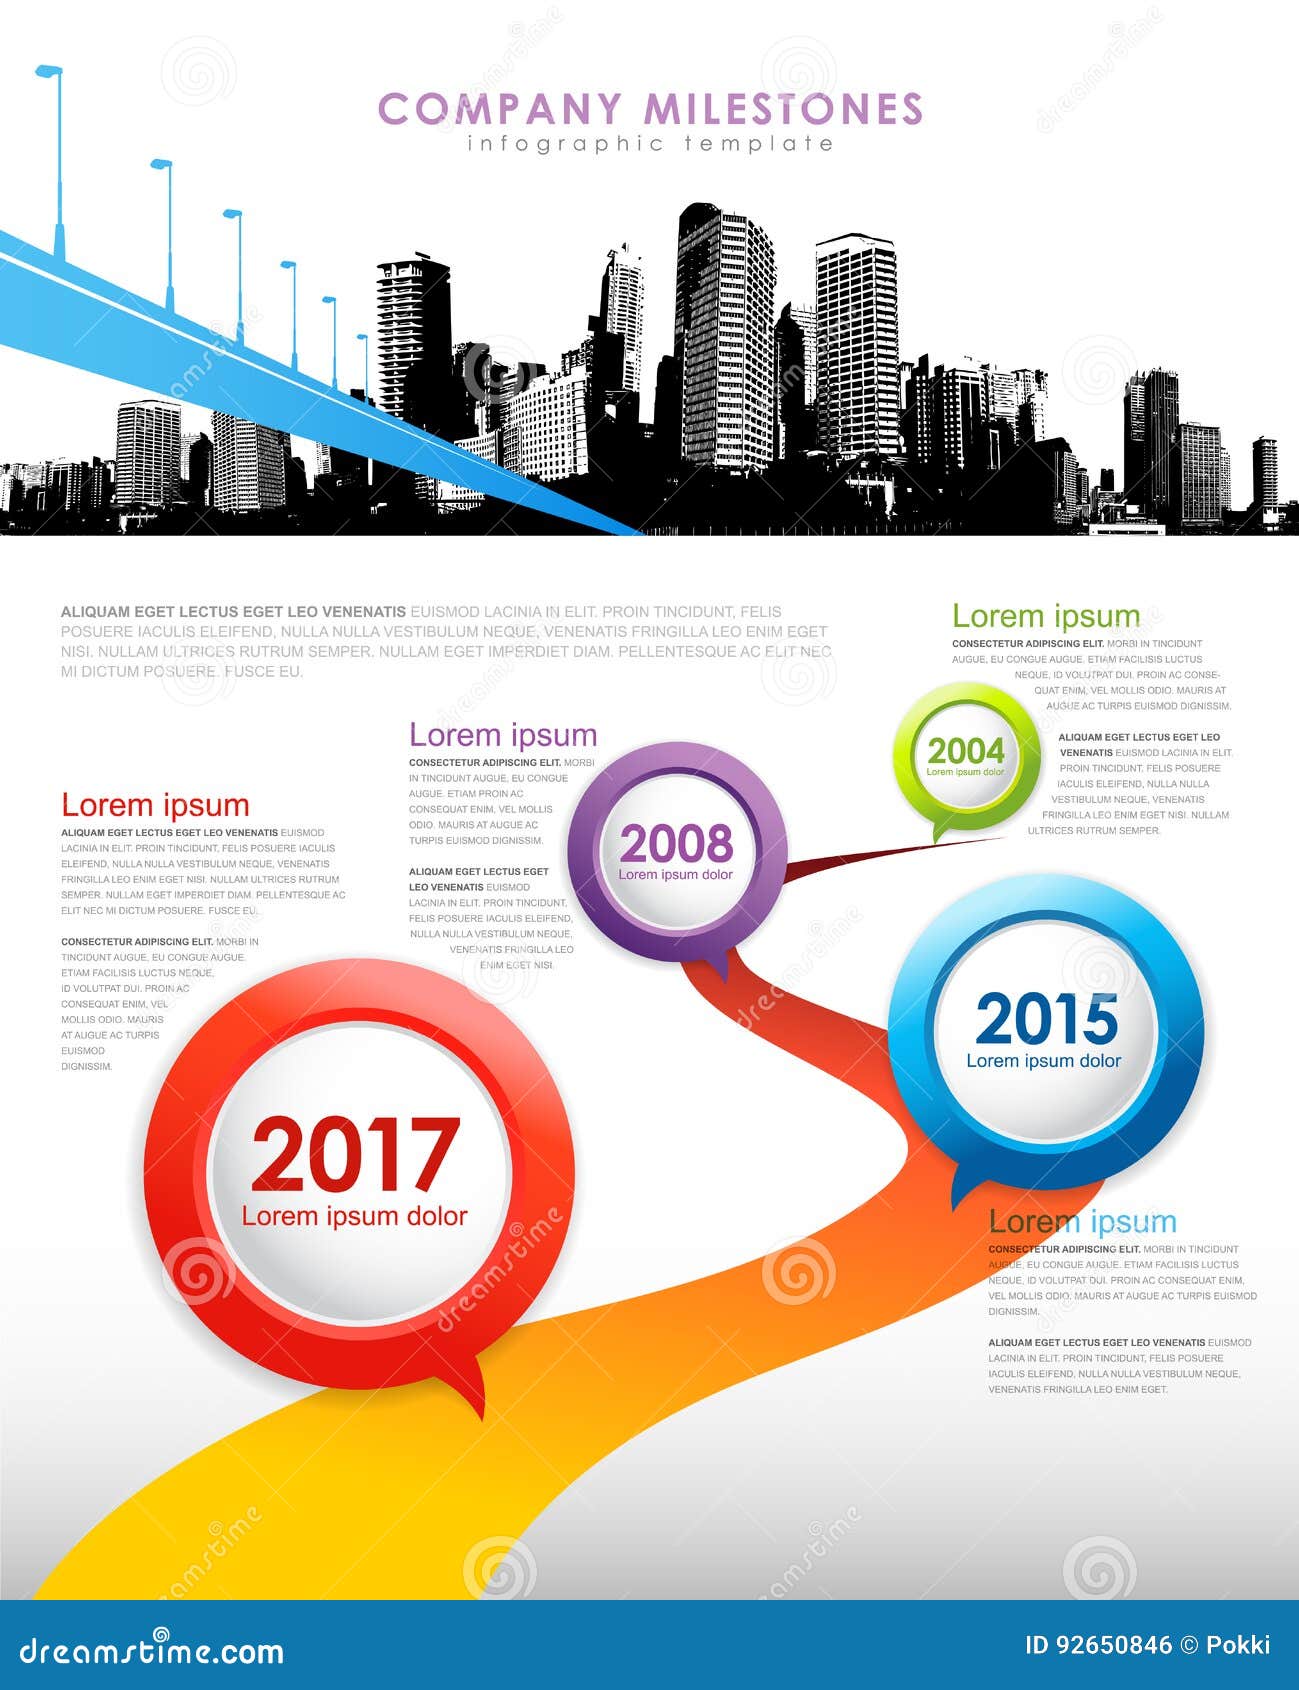 company milestones infographic